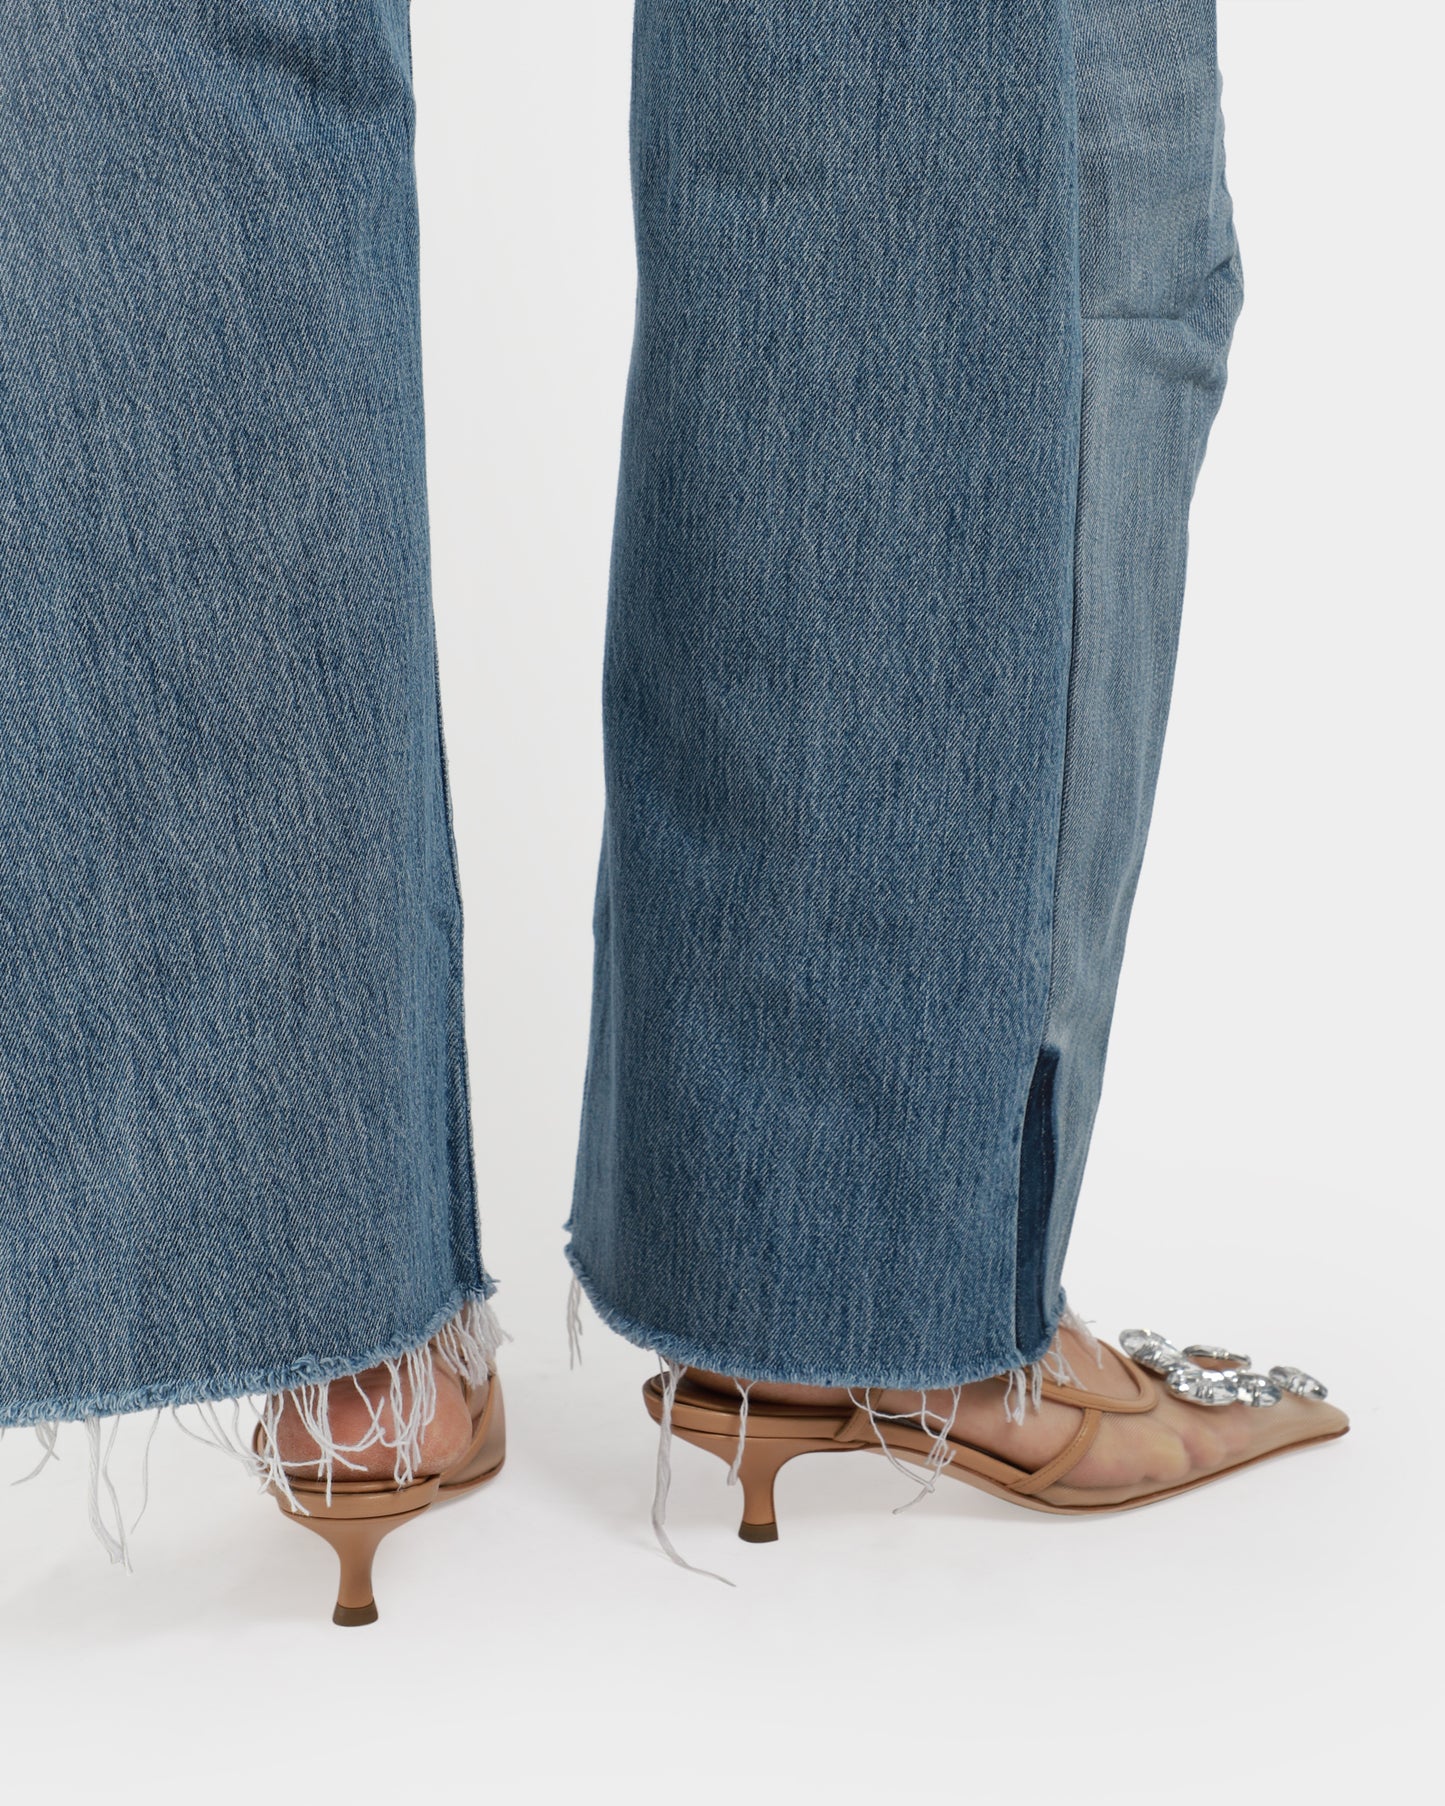 Vintage Lasso Jeans